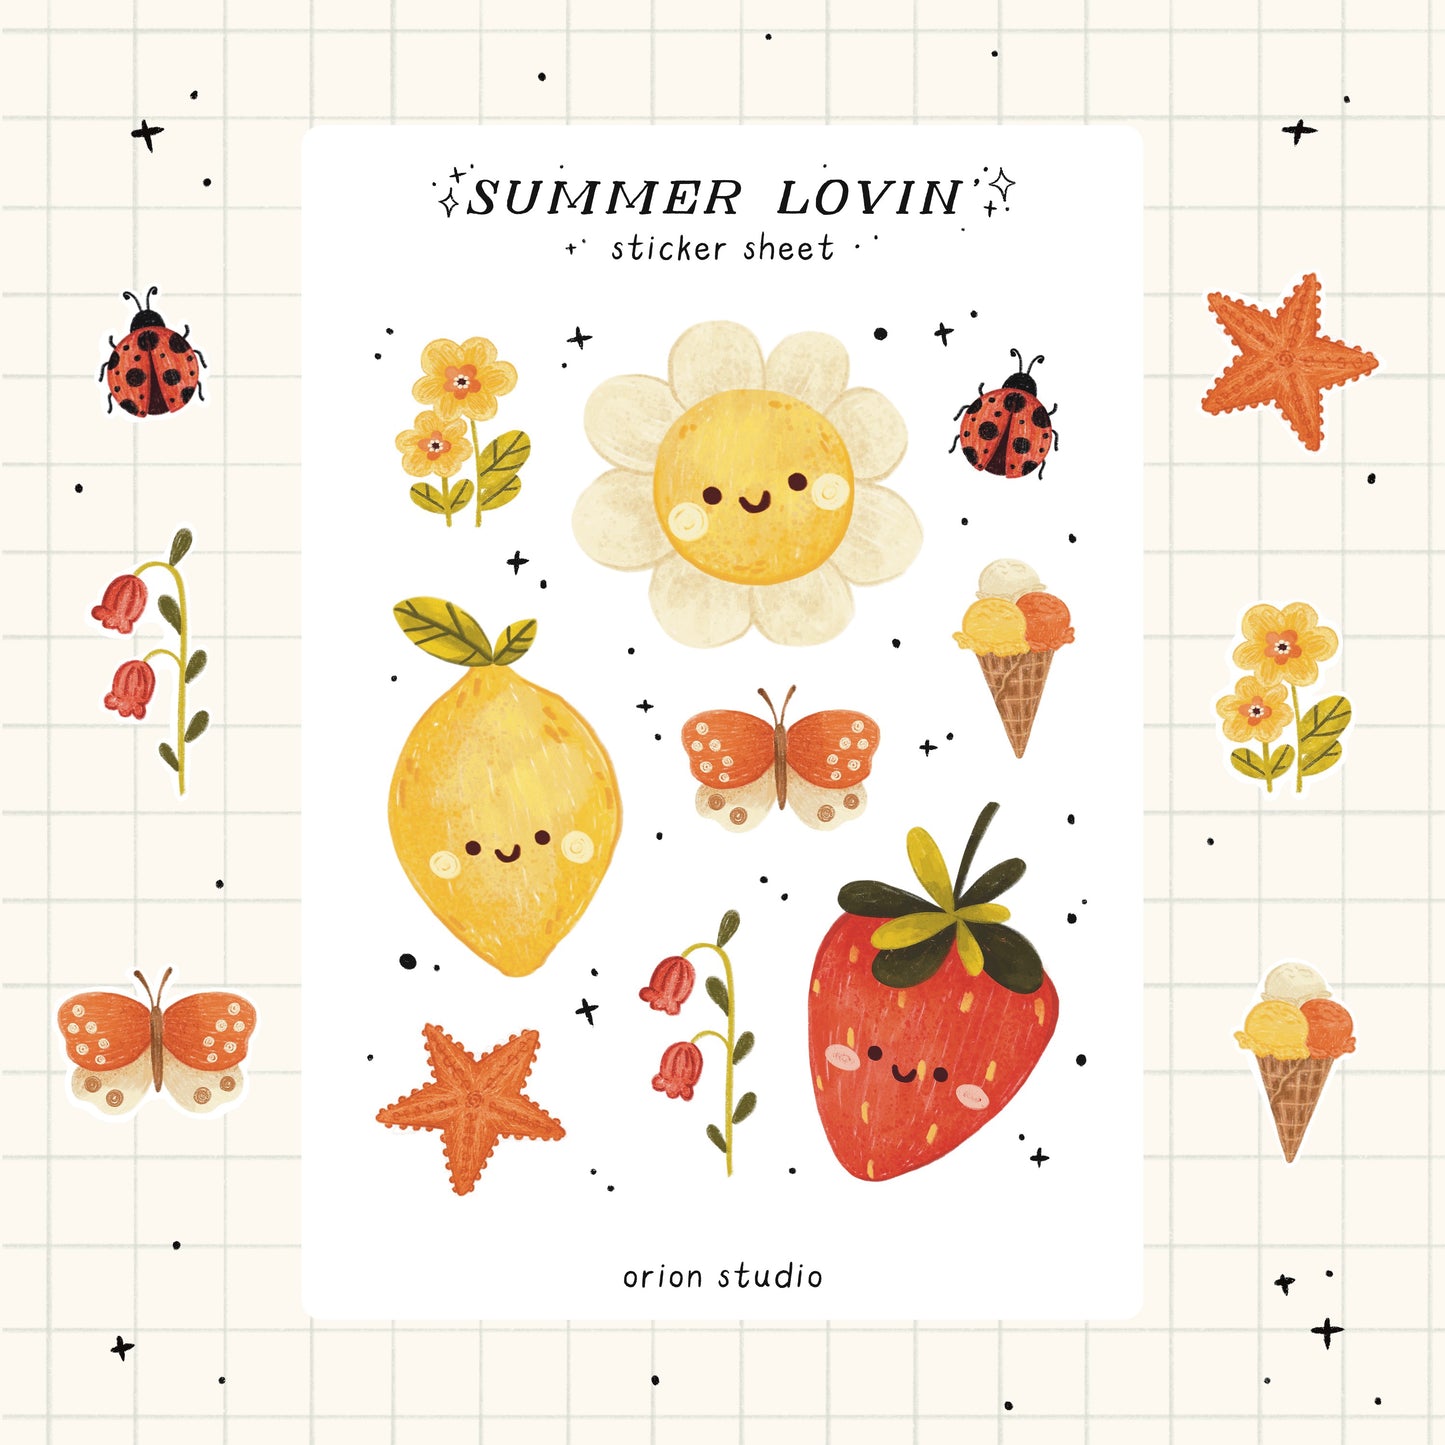 'SUMMER LOVIN' sticker sheet